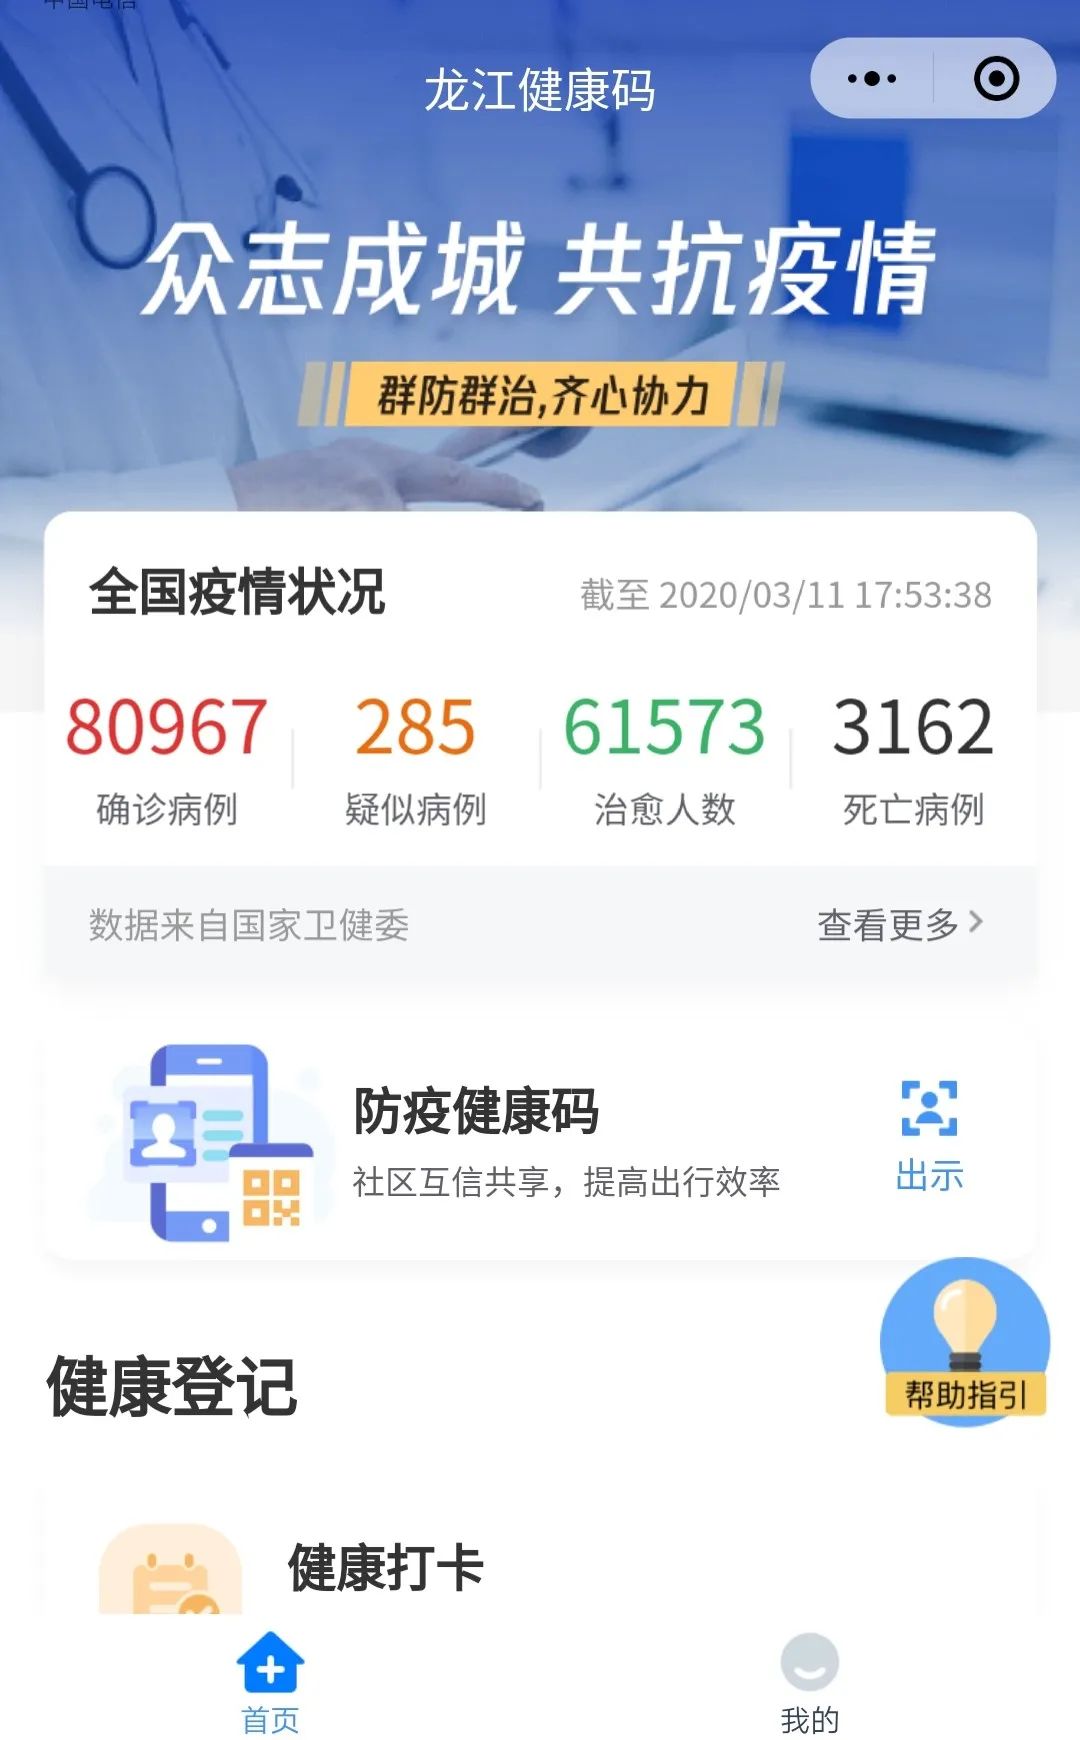 龙江健康码亮码次数破亿每三个黑龙江人就有一位用它出行